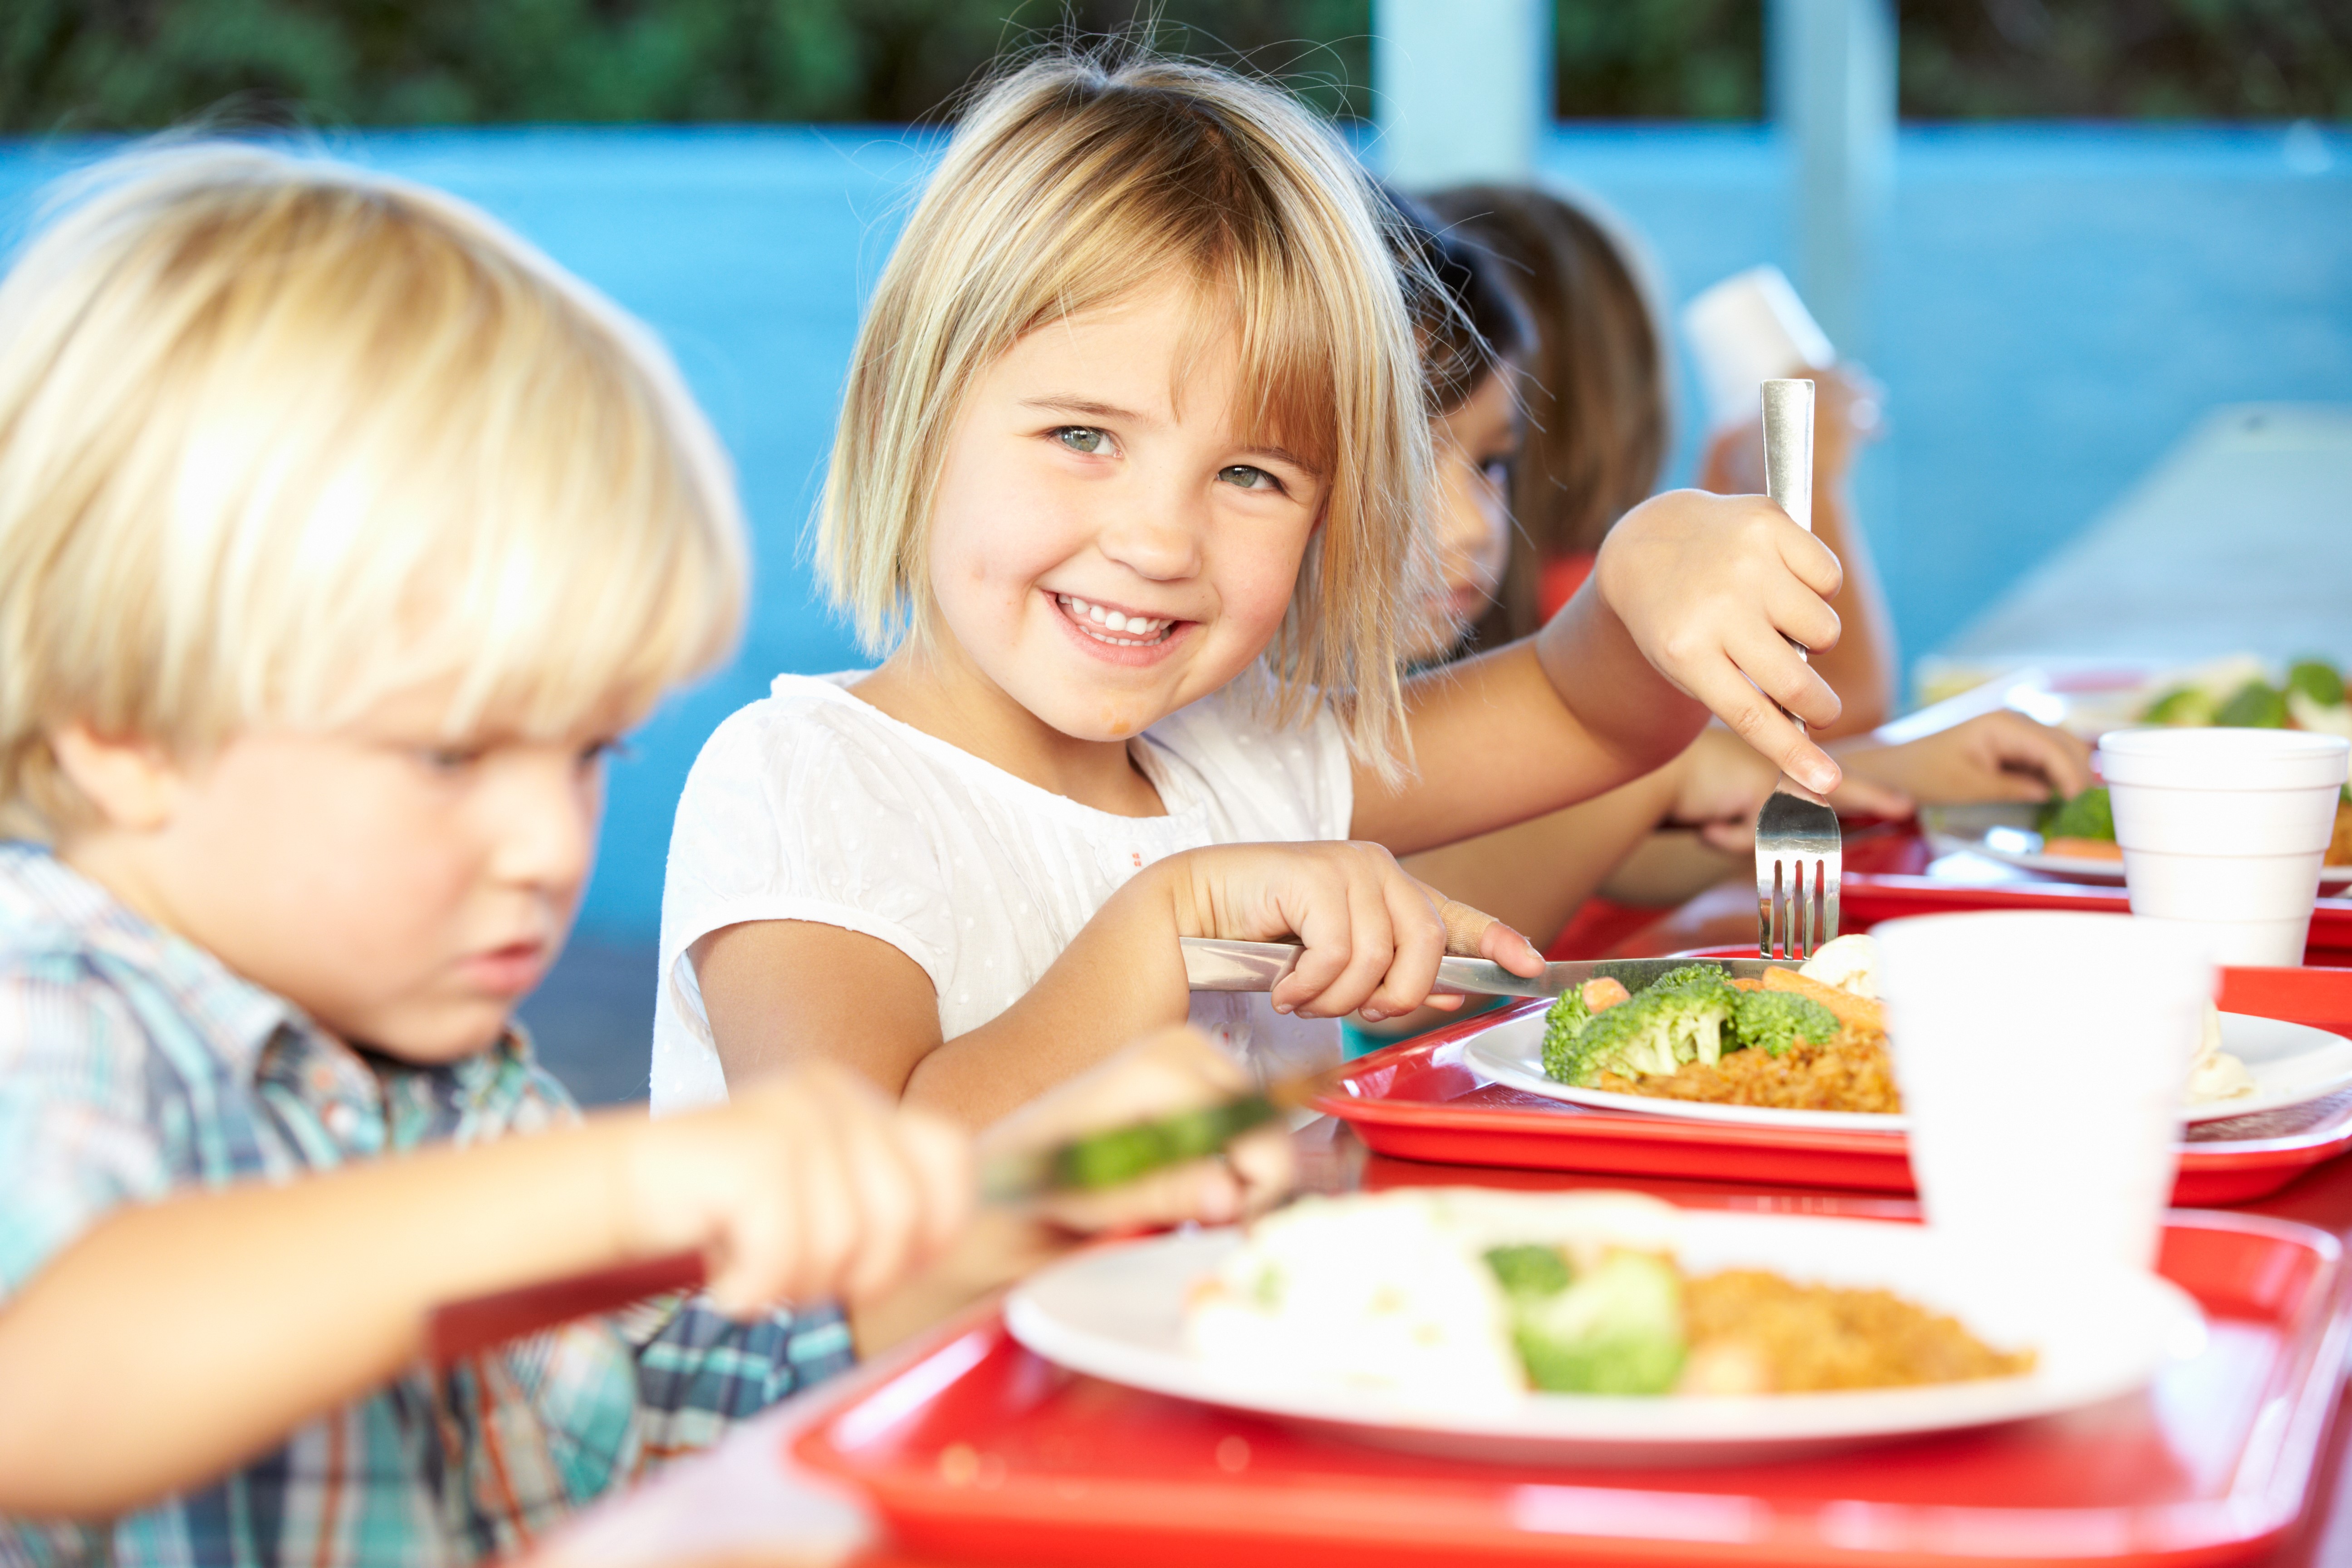 Разная культура питания. Дети за столом. Питание детей. Еда для детей. Дети обедают.